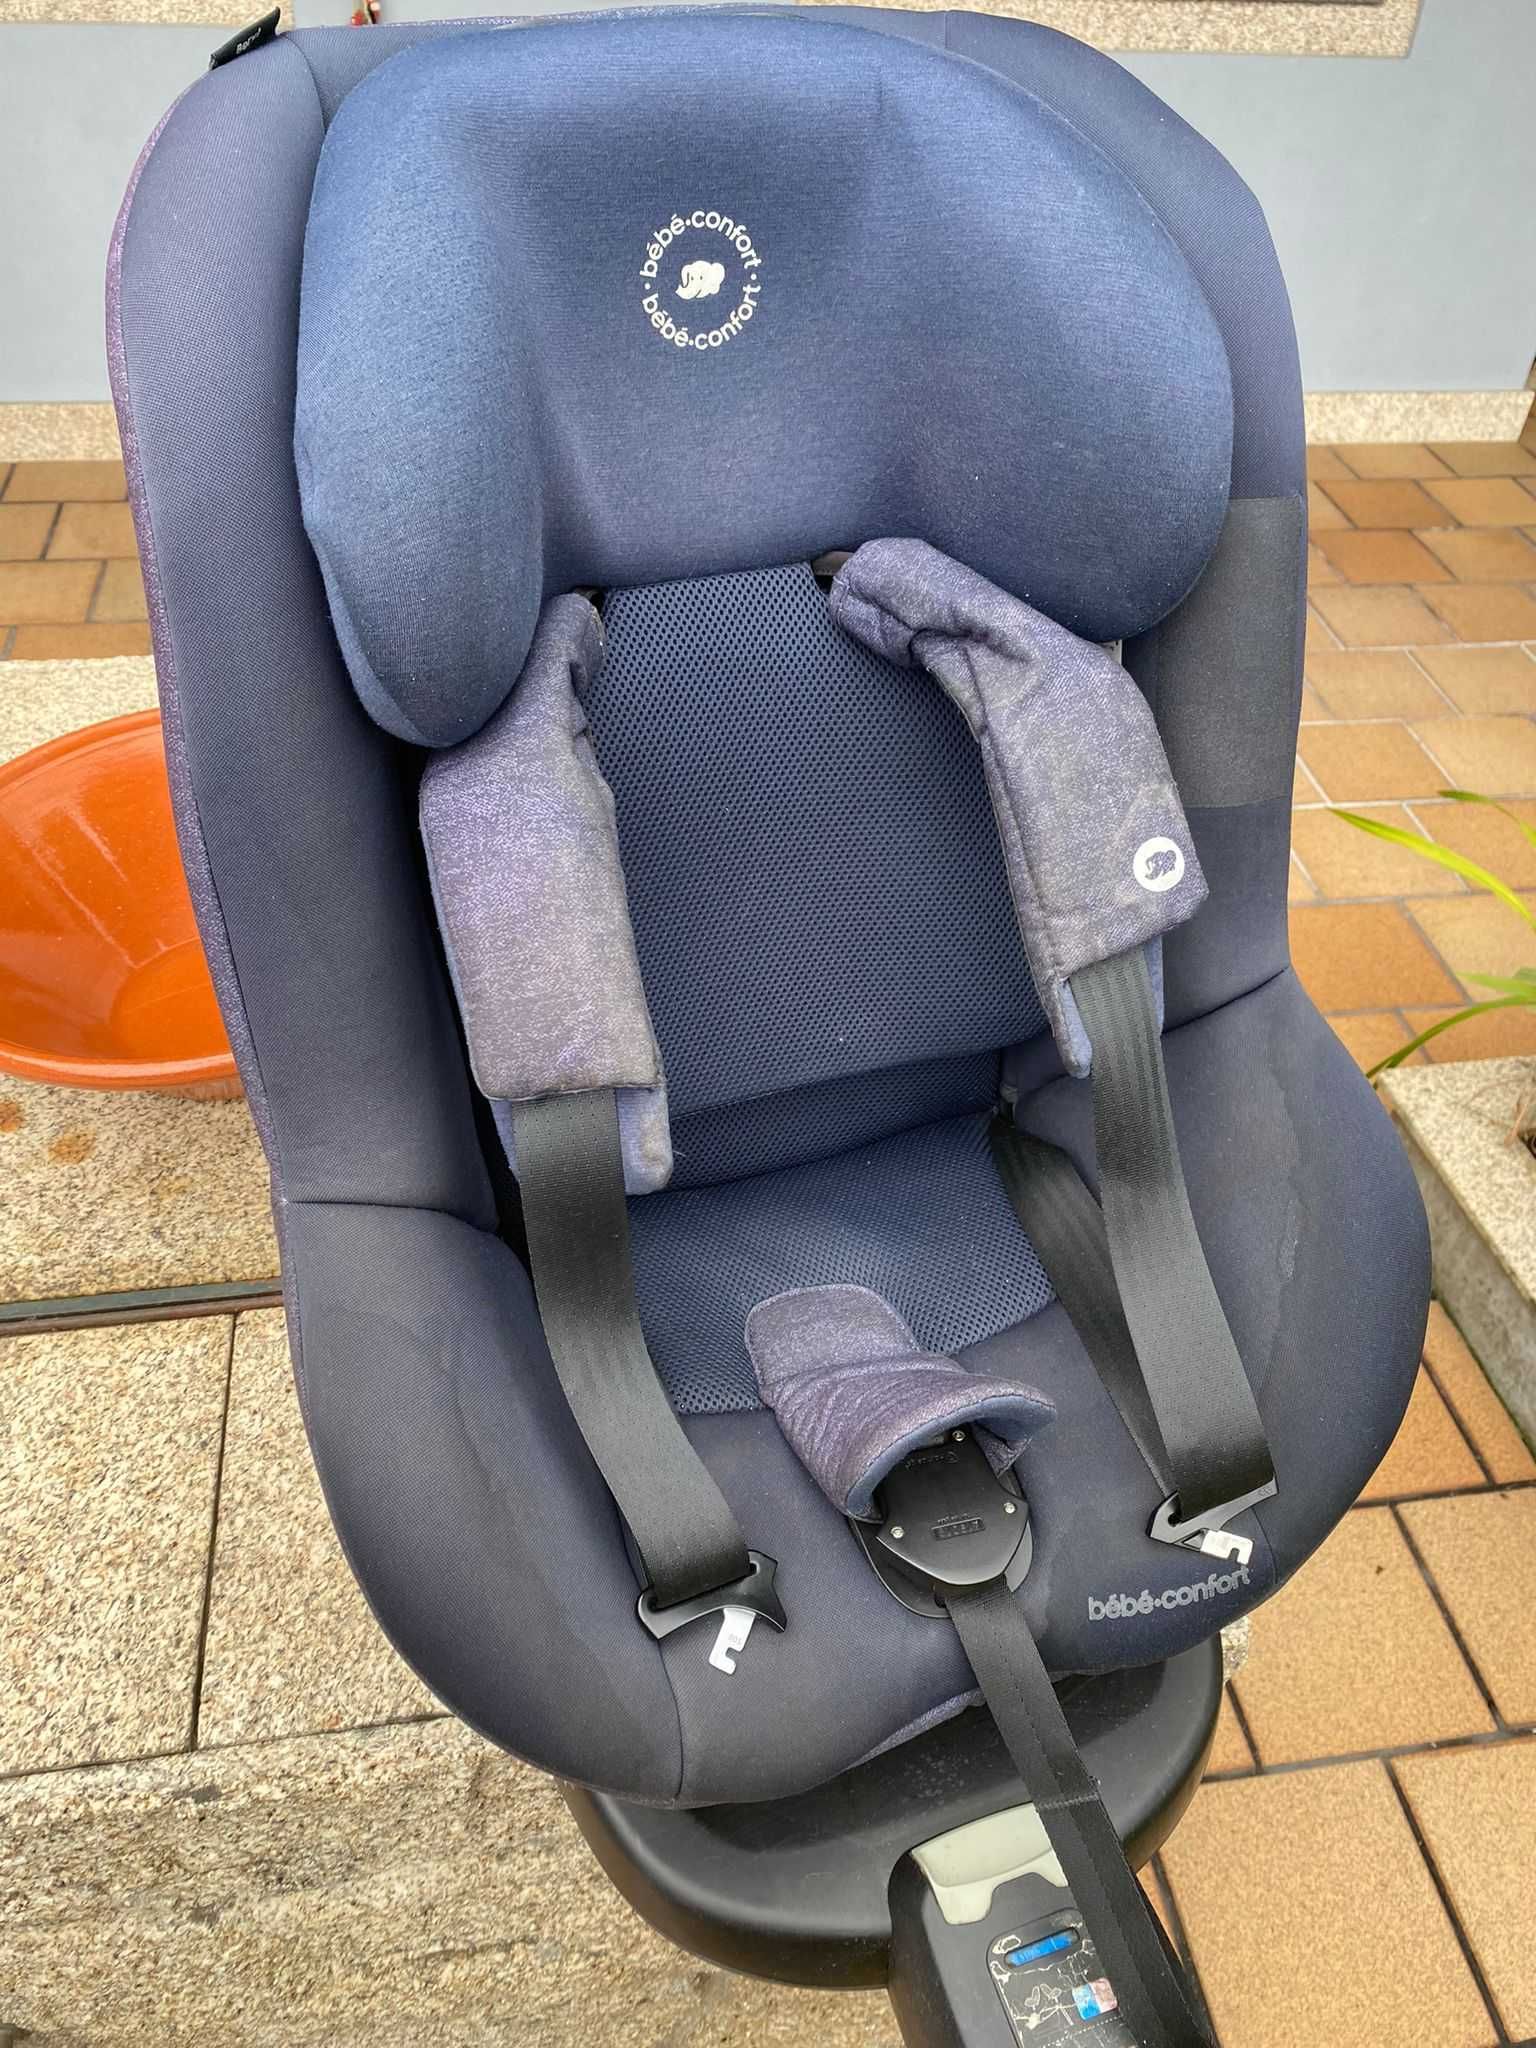 Cadeira e base Isofix Auto Bebé-Confort